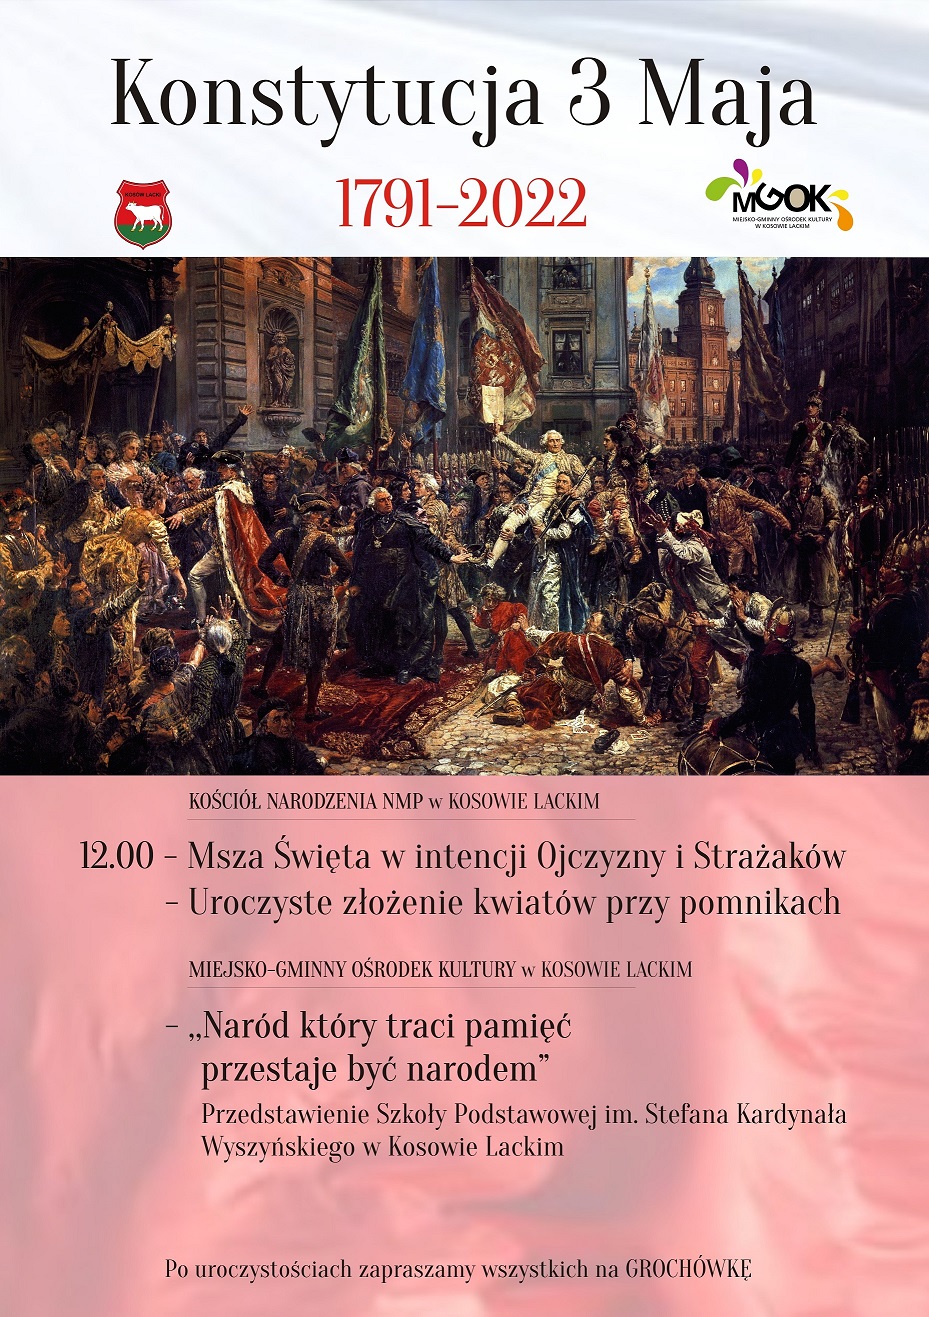 Obchody uchwalenia Konstytucji 3 Maja 2022 w Kosowie Lackim - plakat